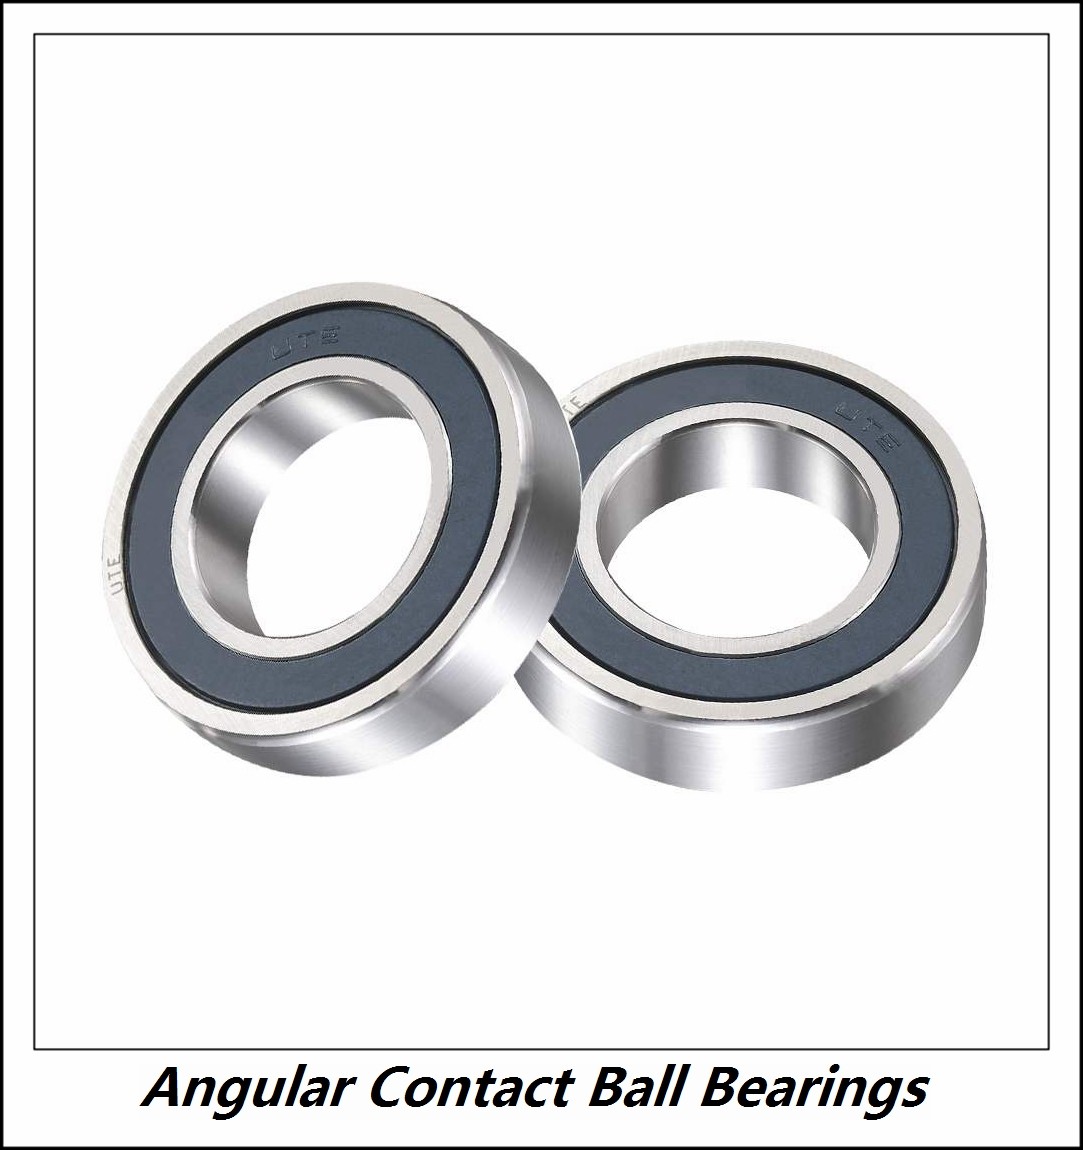 0.669 Inch | 17 Millimeter x 1.575 Inch | 40 Millimeter x 0.689 Inch | 17.5 Millimeter  NTN 5203SC3  Angular Contact Ball Bearings